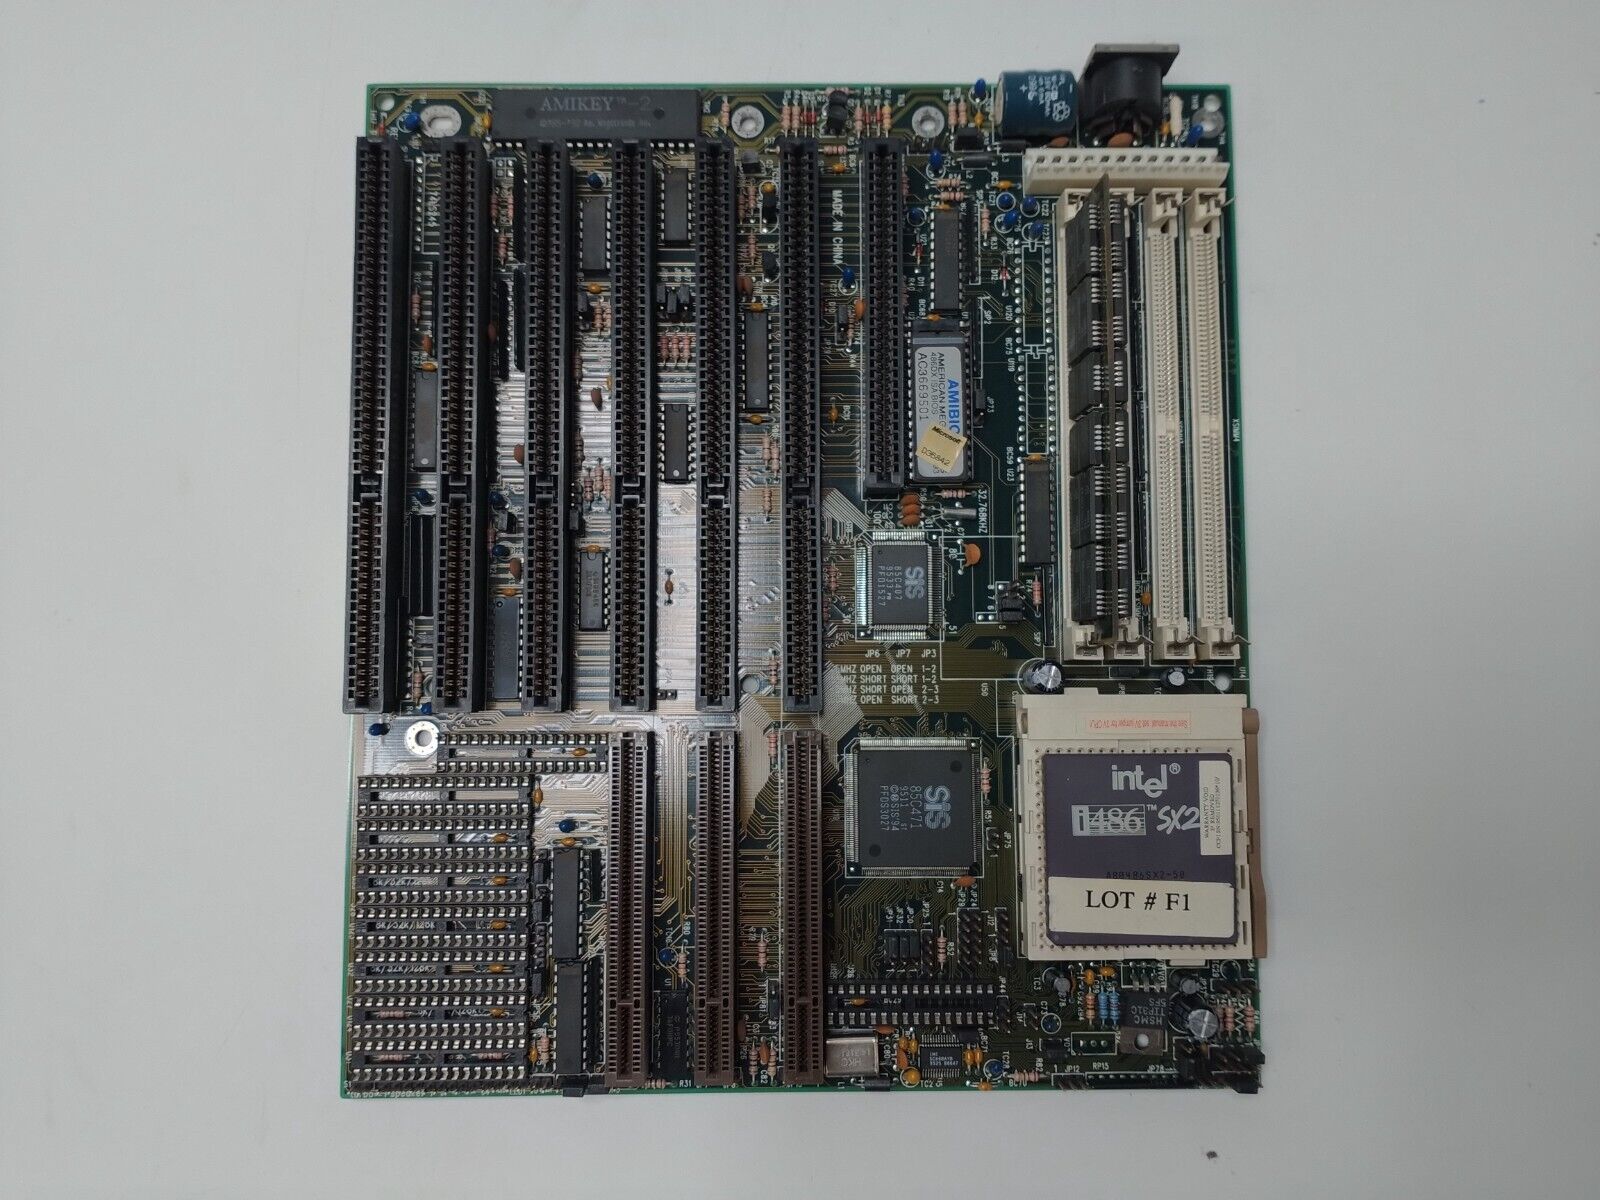 Vintage Motherboard Soyo Group MV4-V4S471/472P Ver. 1.0 Socket 3 Intel i486 SX2